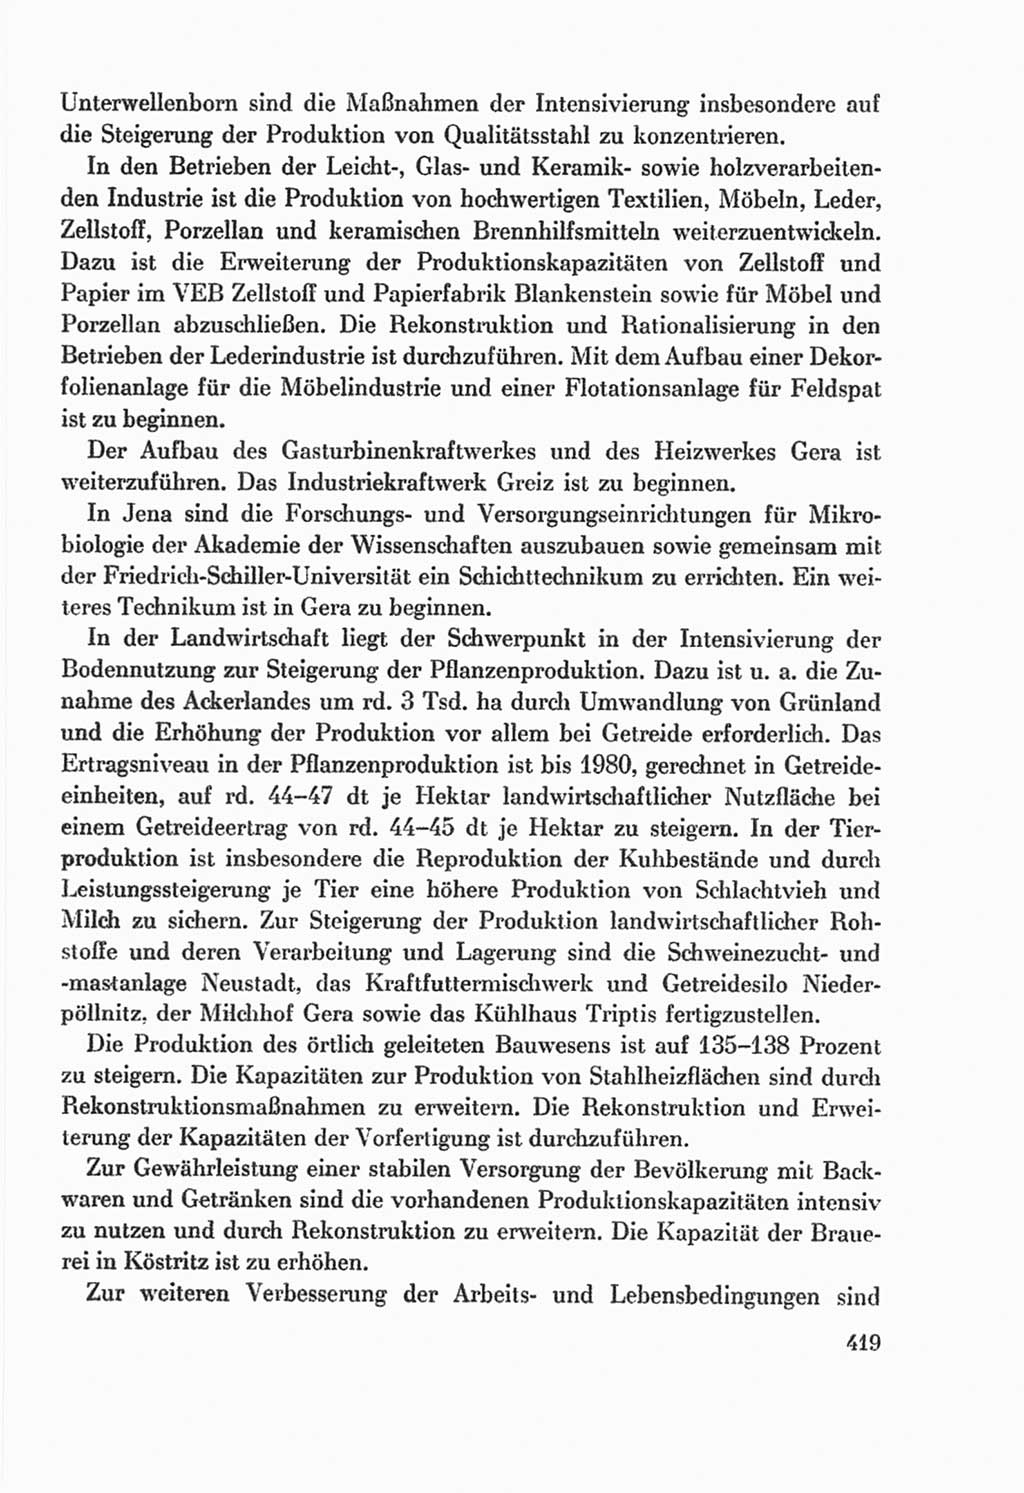 Protokoll der Verhandlungen des Ⅸ. Parteitages der Sozialistischen Einheitspartei Deutschlands (SED) [Deutsche Demokratische Republik (DDR)] 1976, Band 2, Seite 419 (Prot. Verh. Ⅸ. PT SED DDR 1976, Bd. 2, S. 419)